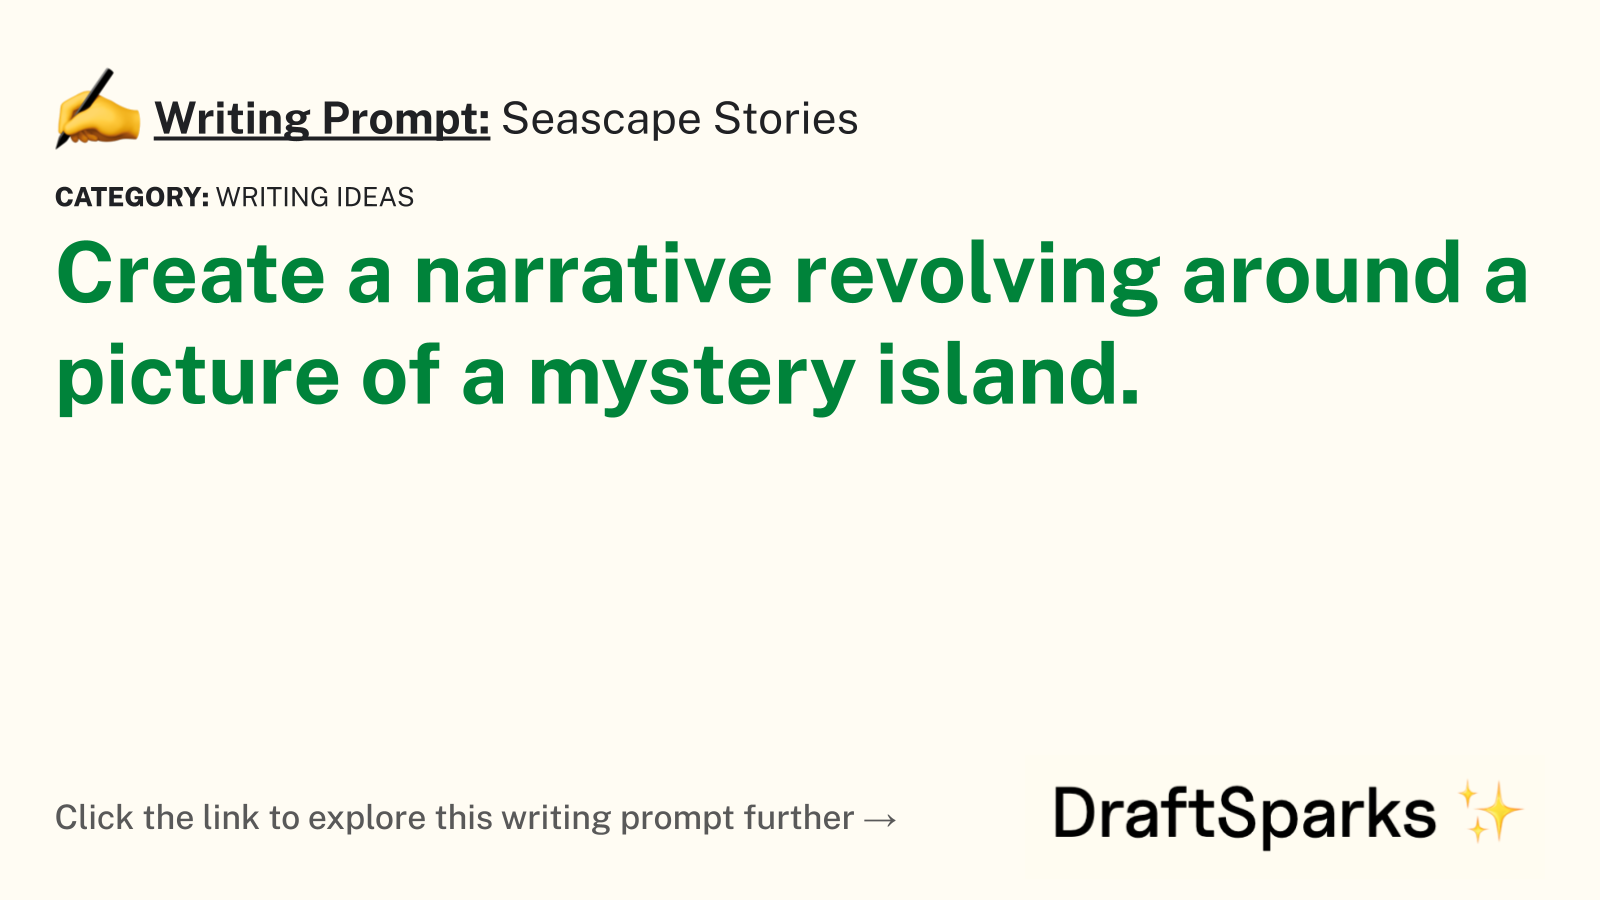 Seascape Stories